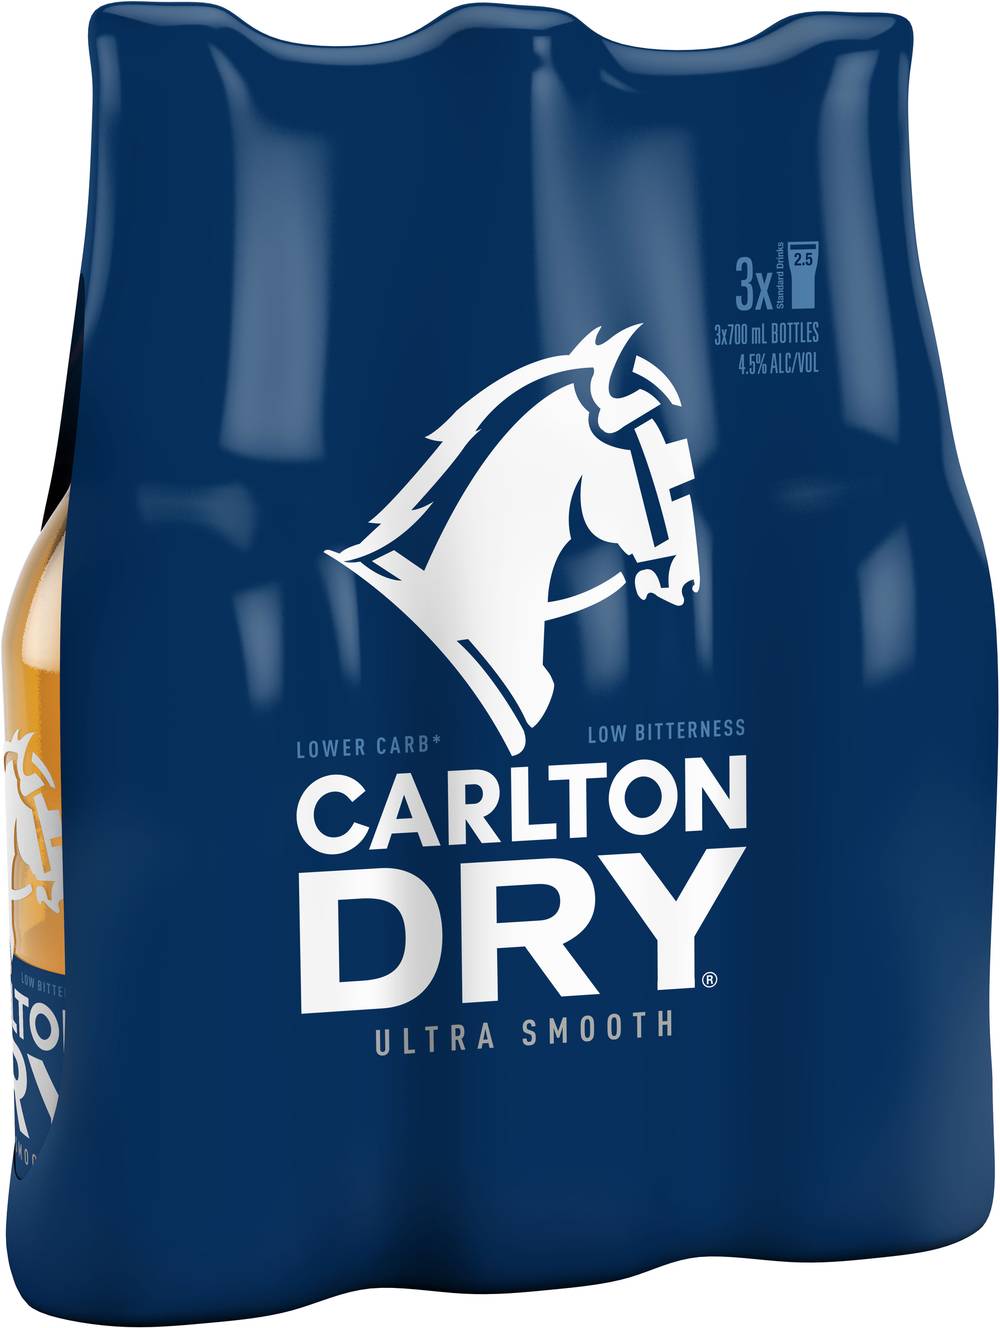 Carlton Dry Bottle 700mL X 3 pack